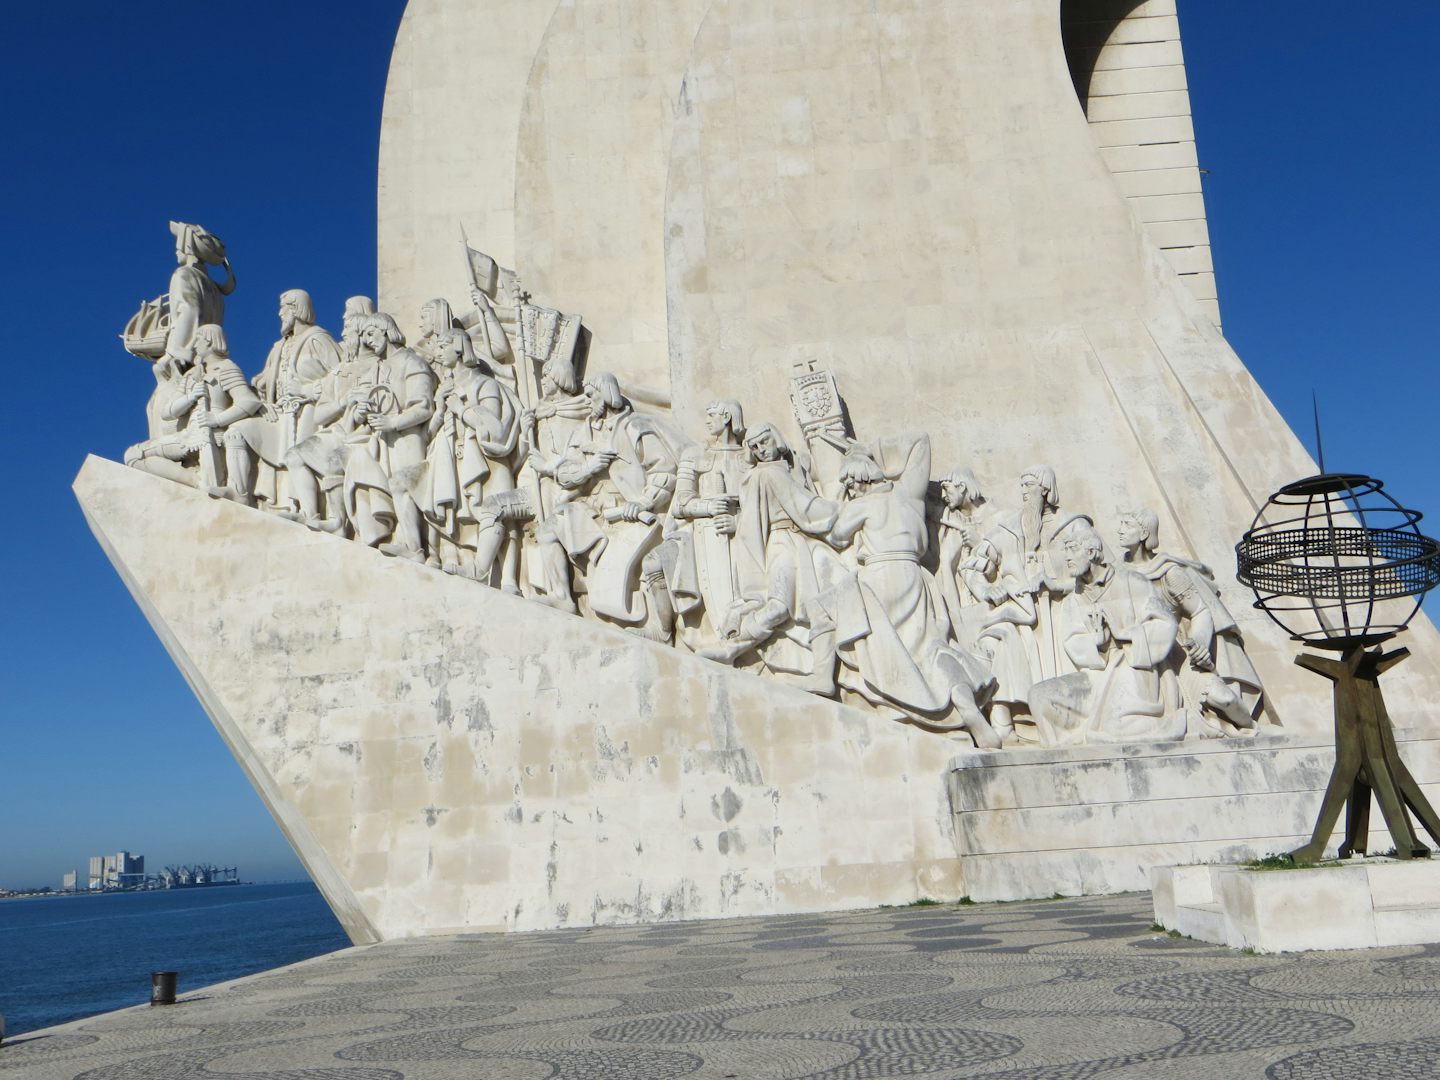 Portuguese Explorers' monument